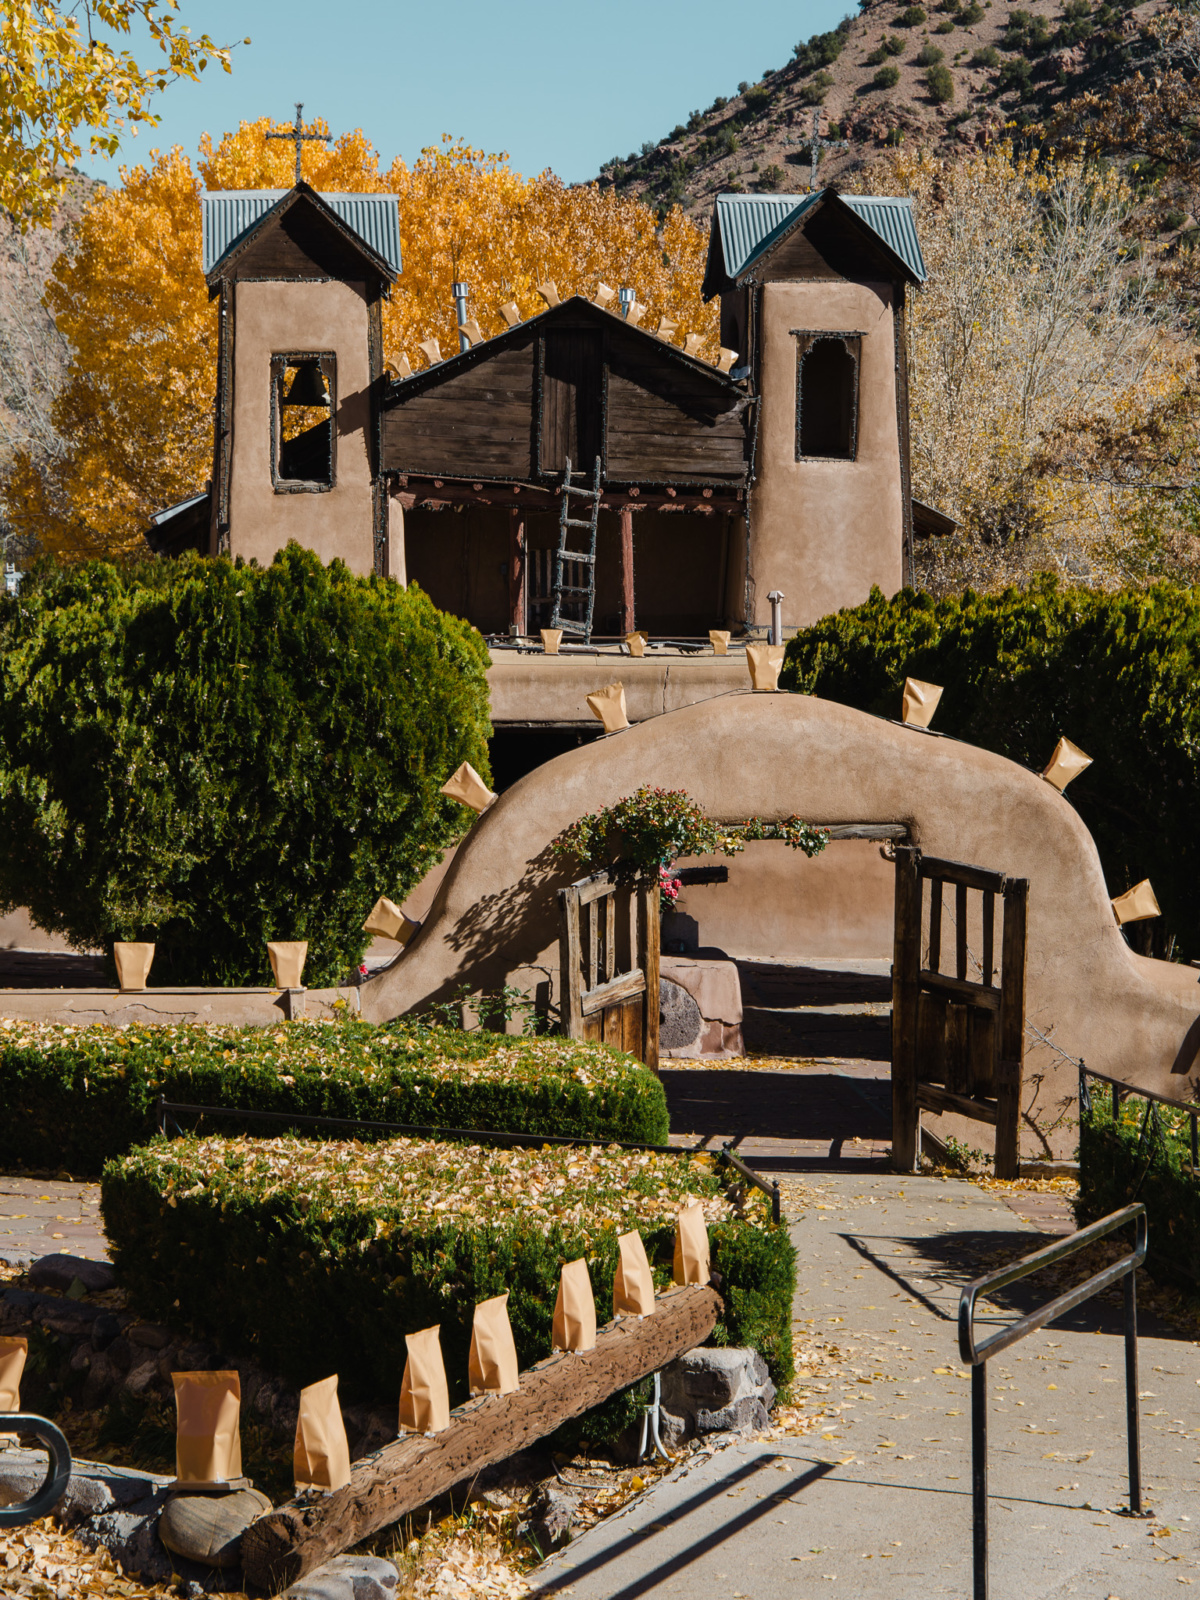 Santuario de Chimayó in Northern New Mexico.